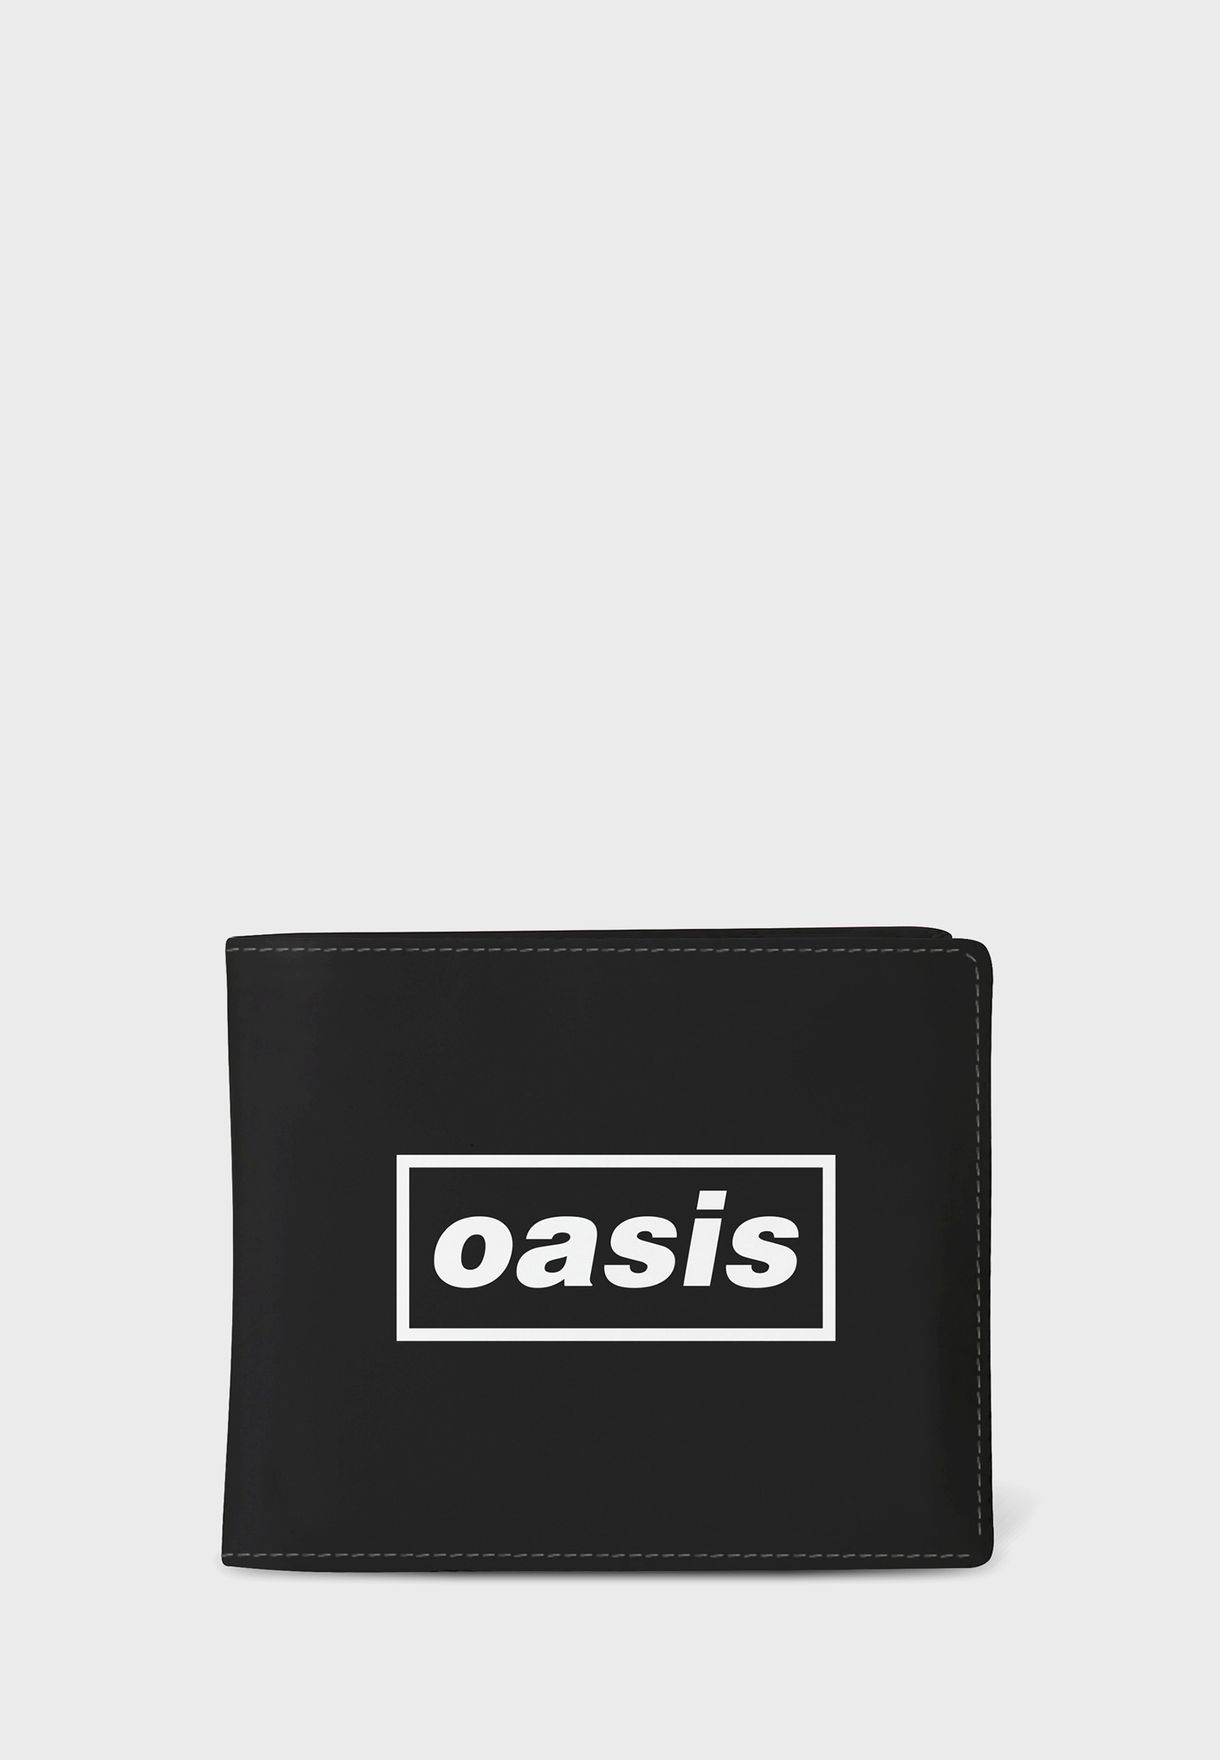 Oasis Wallet